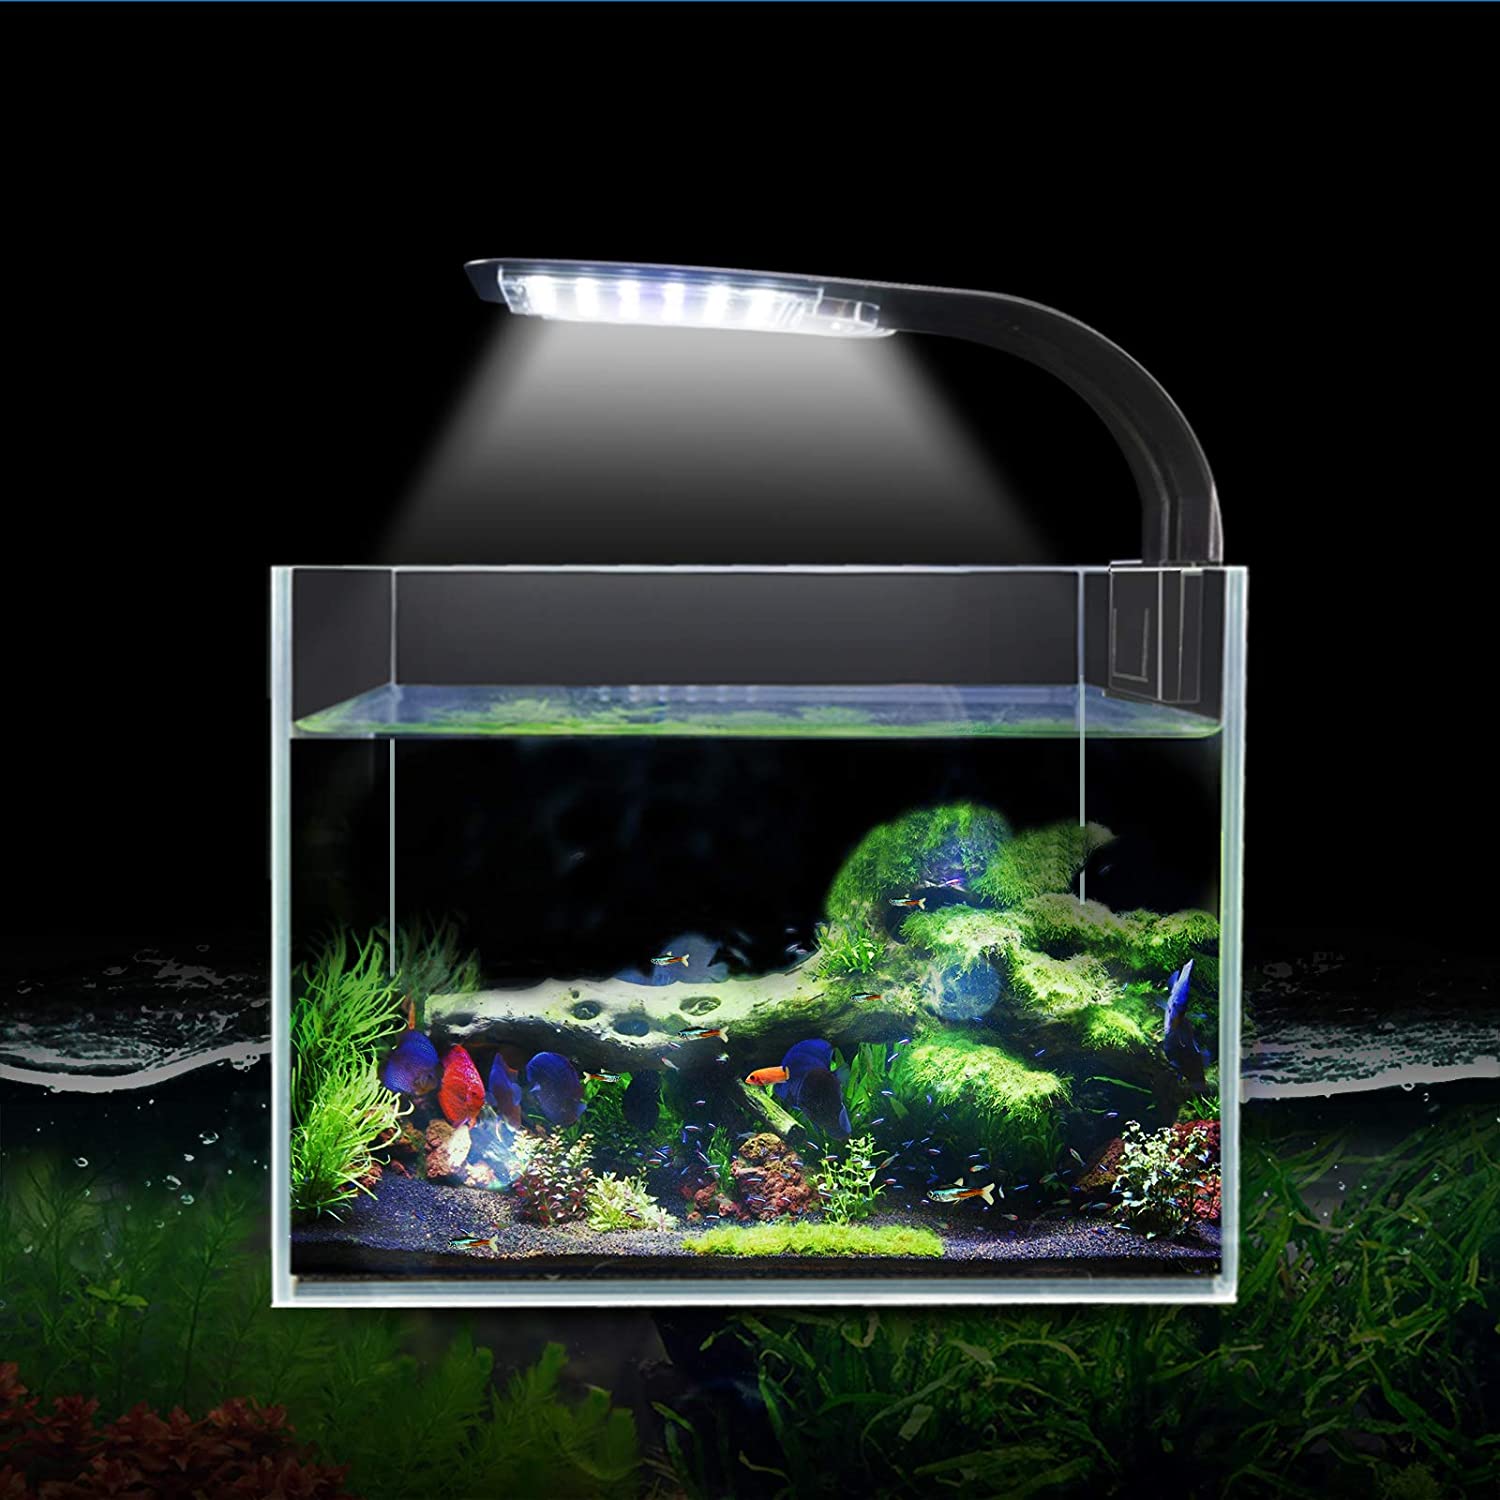 Super slim led Lamp aquarium fish light aquatic plant lighting